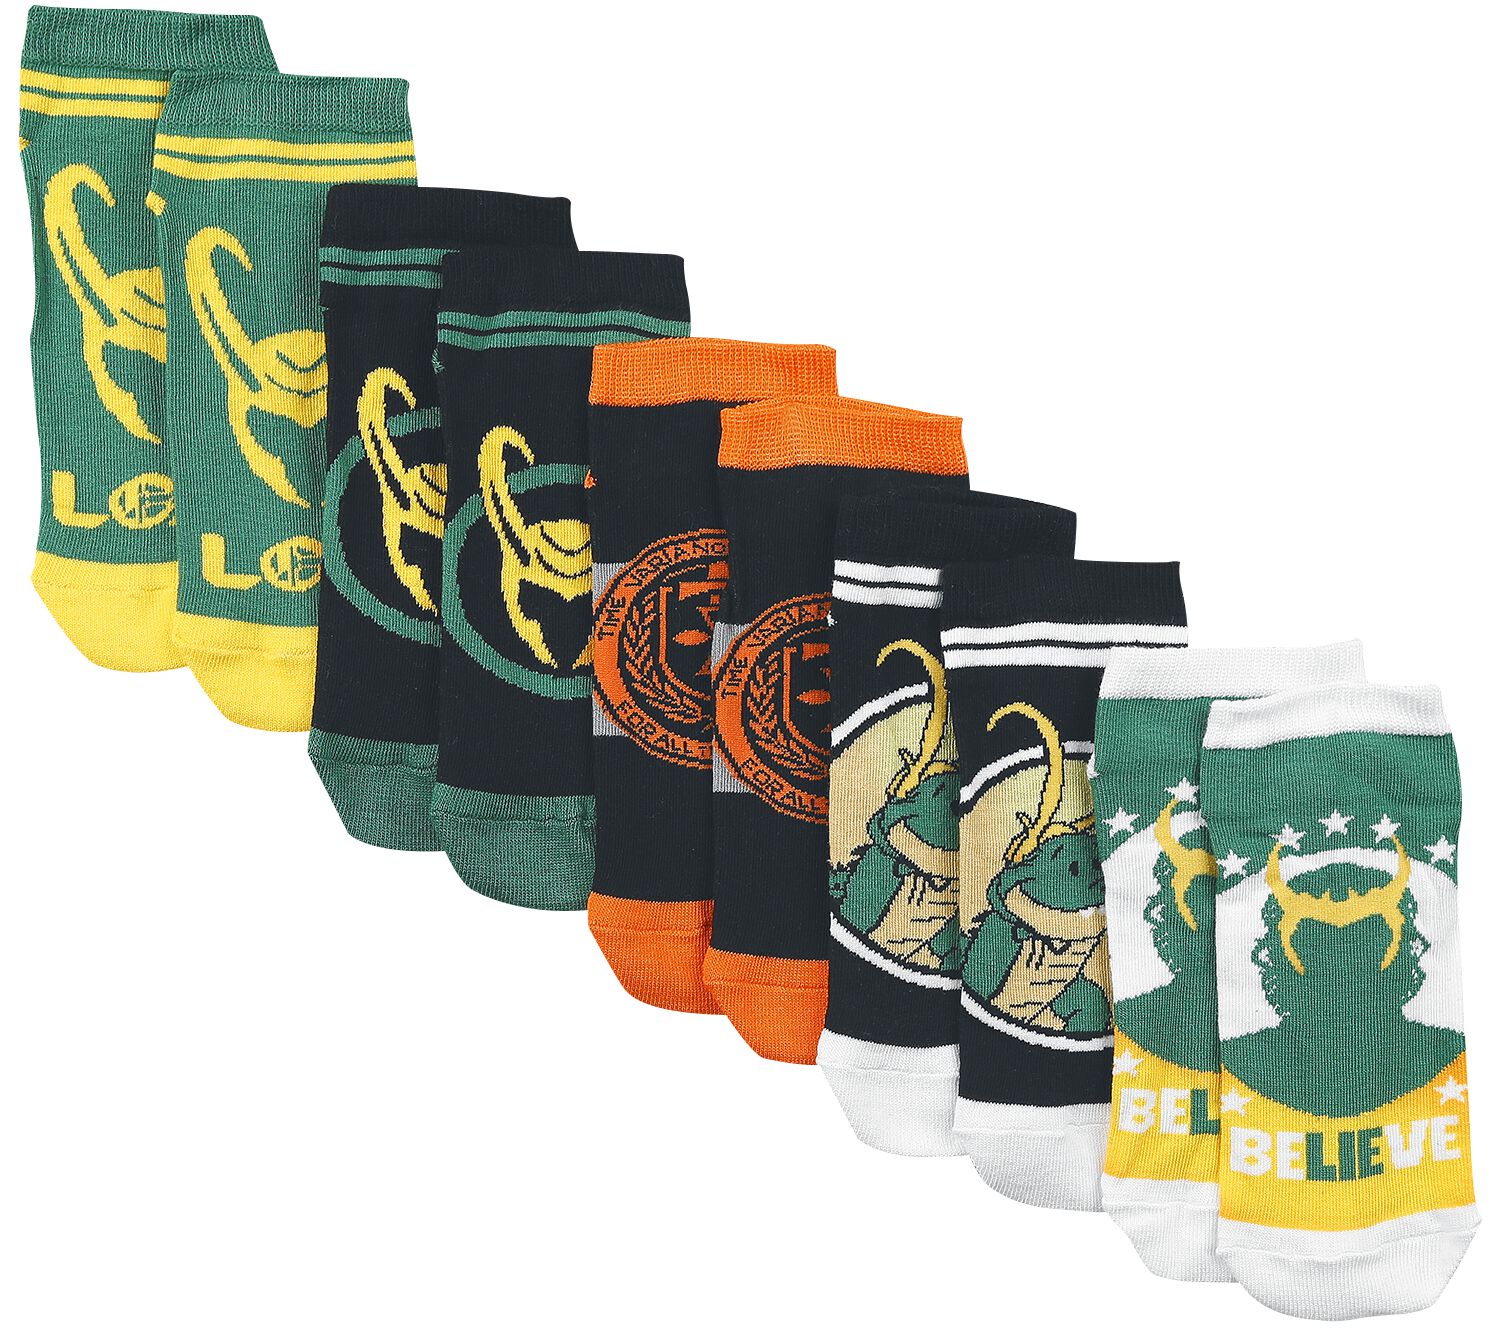 Loki - Marvel Socken - Time Variance Authority - EU35-38 bis EU39-42 - für Damen - Größe EU 35-38 - multicolor  - EMP exklusives Merchandise!